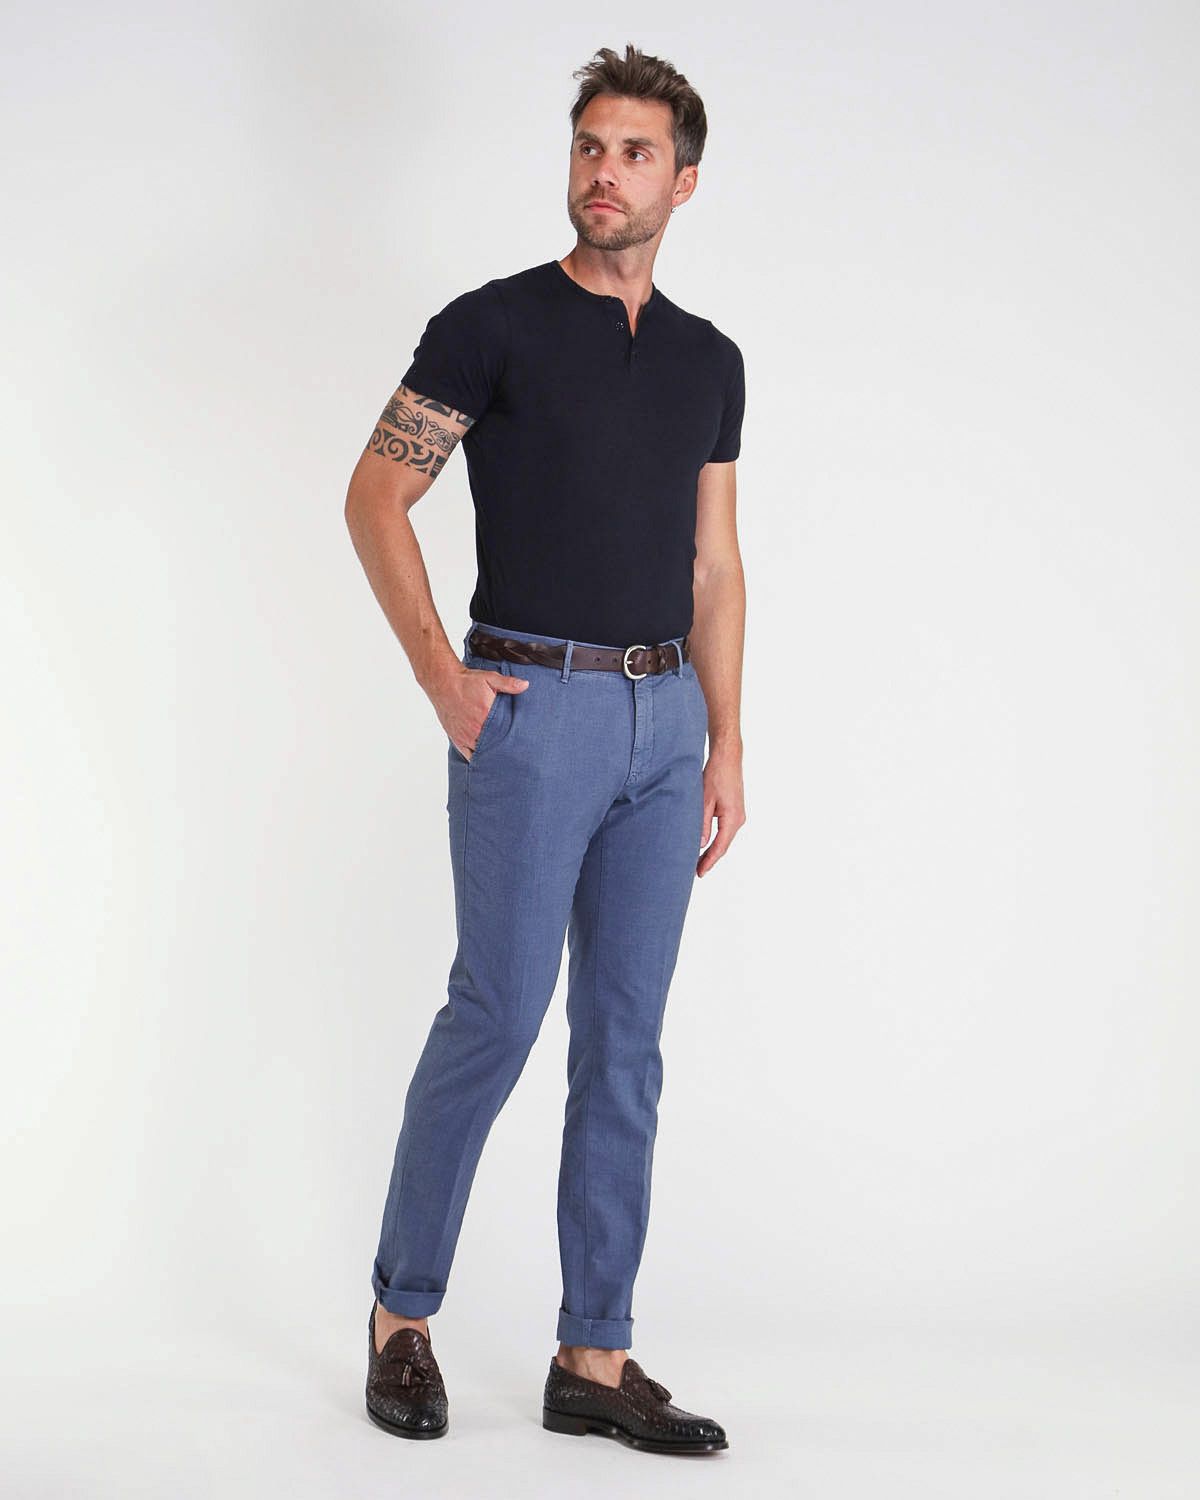 pantaloni senza pences fondo 18 cm cotone microfantasia armaturato blu avio